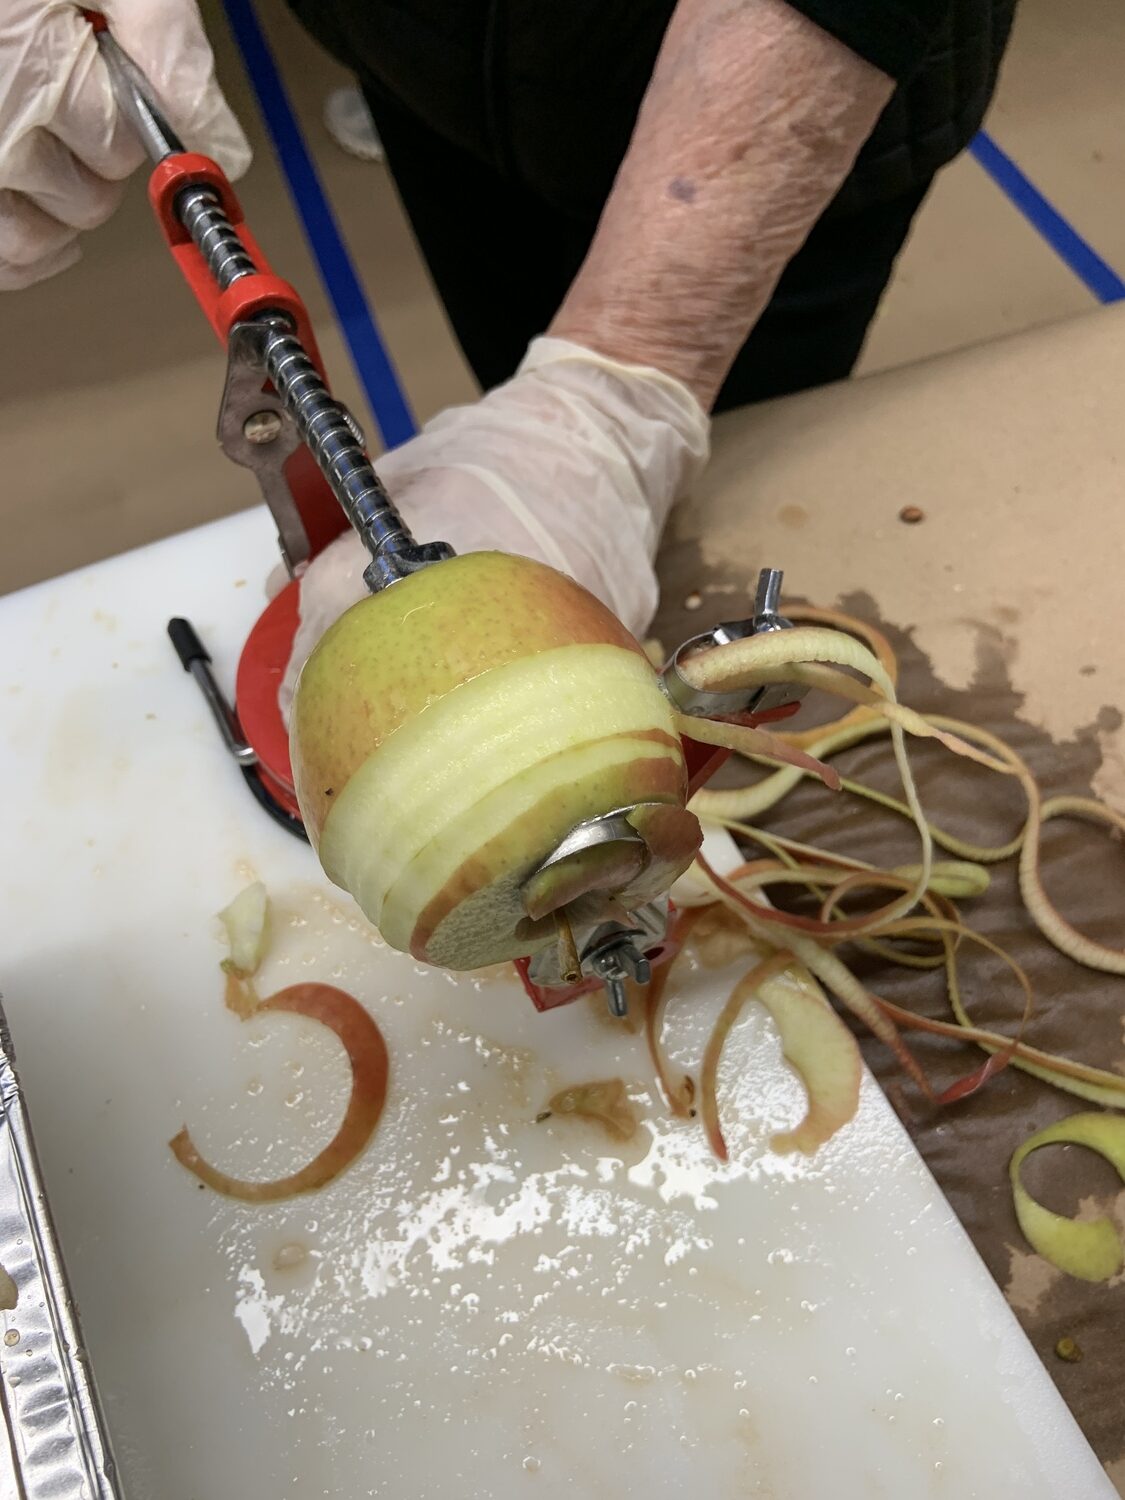 The apple peeler in operation. STEPHEN J. KOTZ